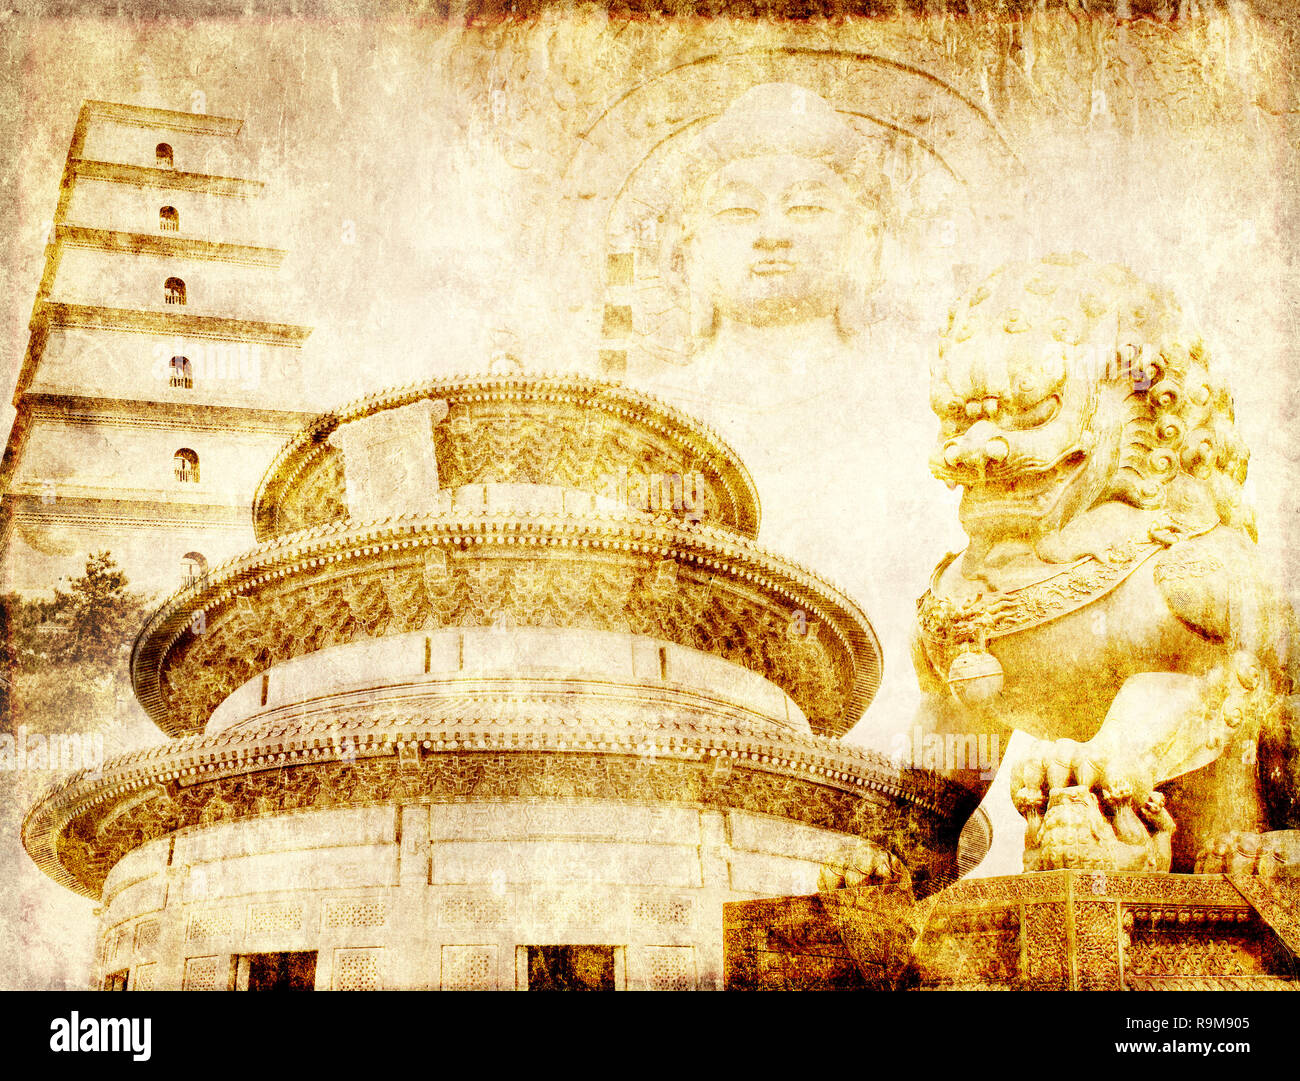 Grunge background avec texture du papier et monuments de Chine - Temple du Ciel à Beijing, la Grande Pagode de l'Oie Sauvage à Xian, lion statue en interdit Cit Banque D'Images